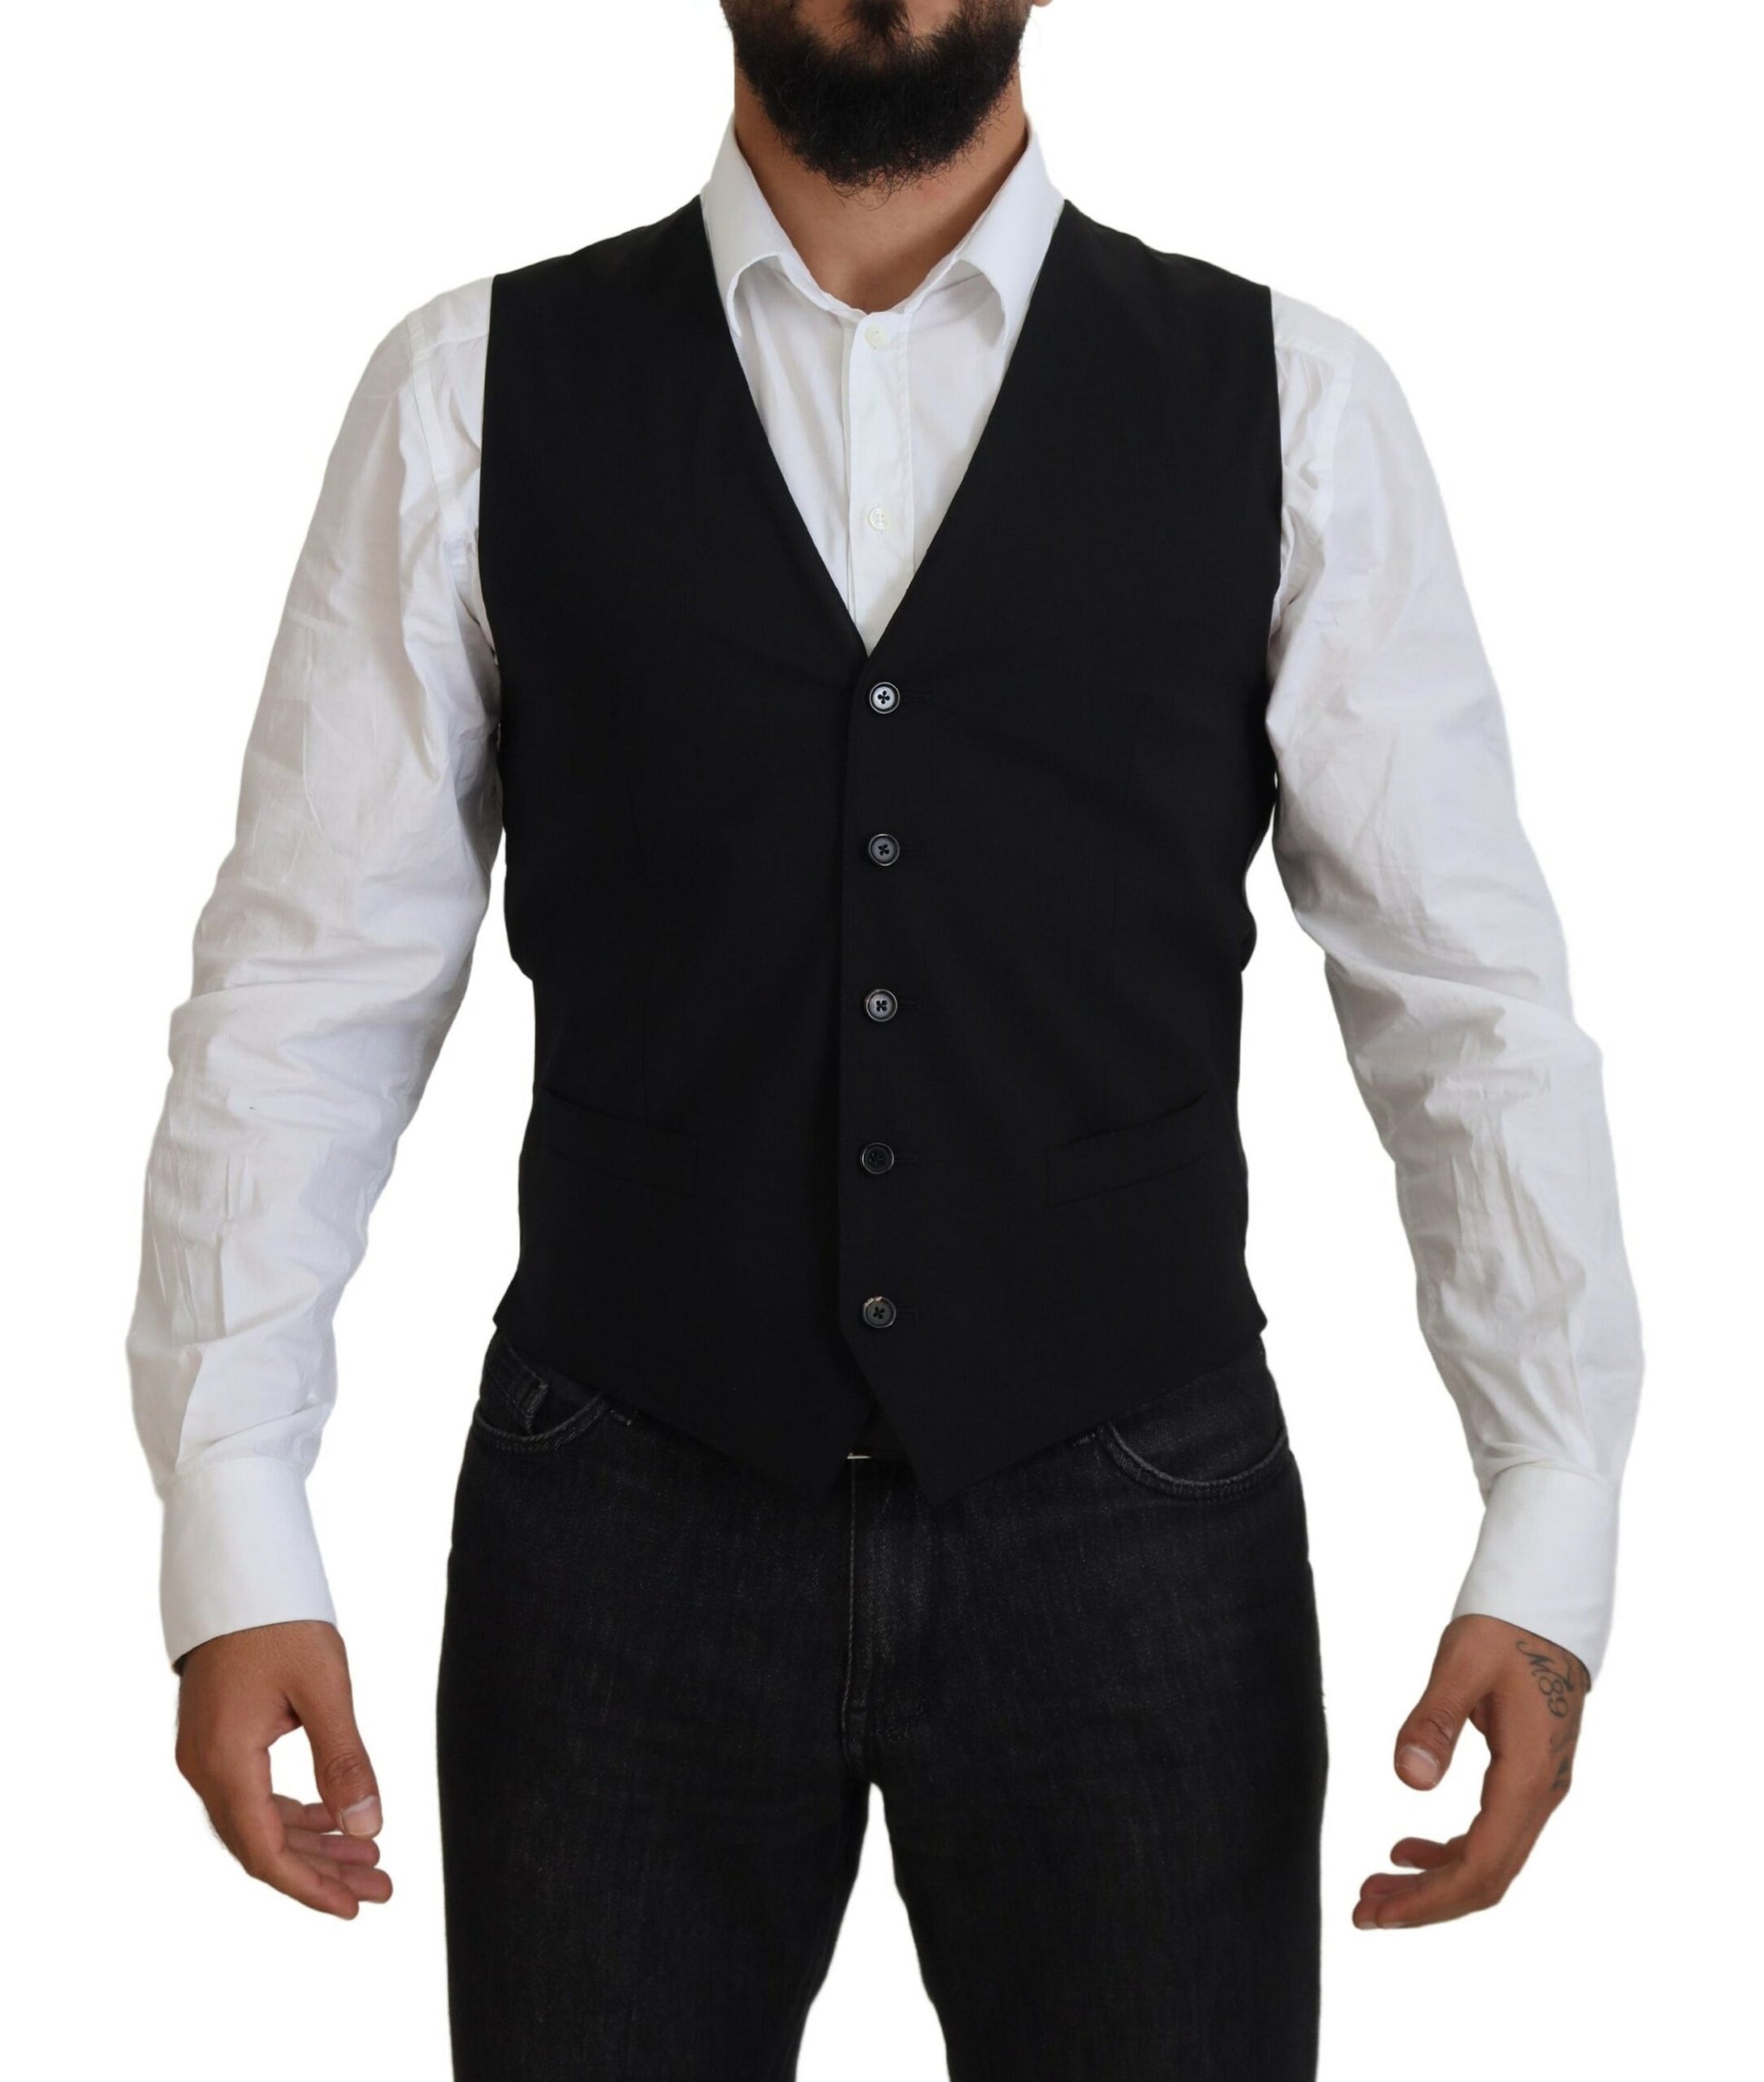 Elegant Black Martini Two-Piece Suit